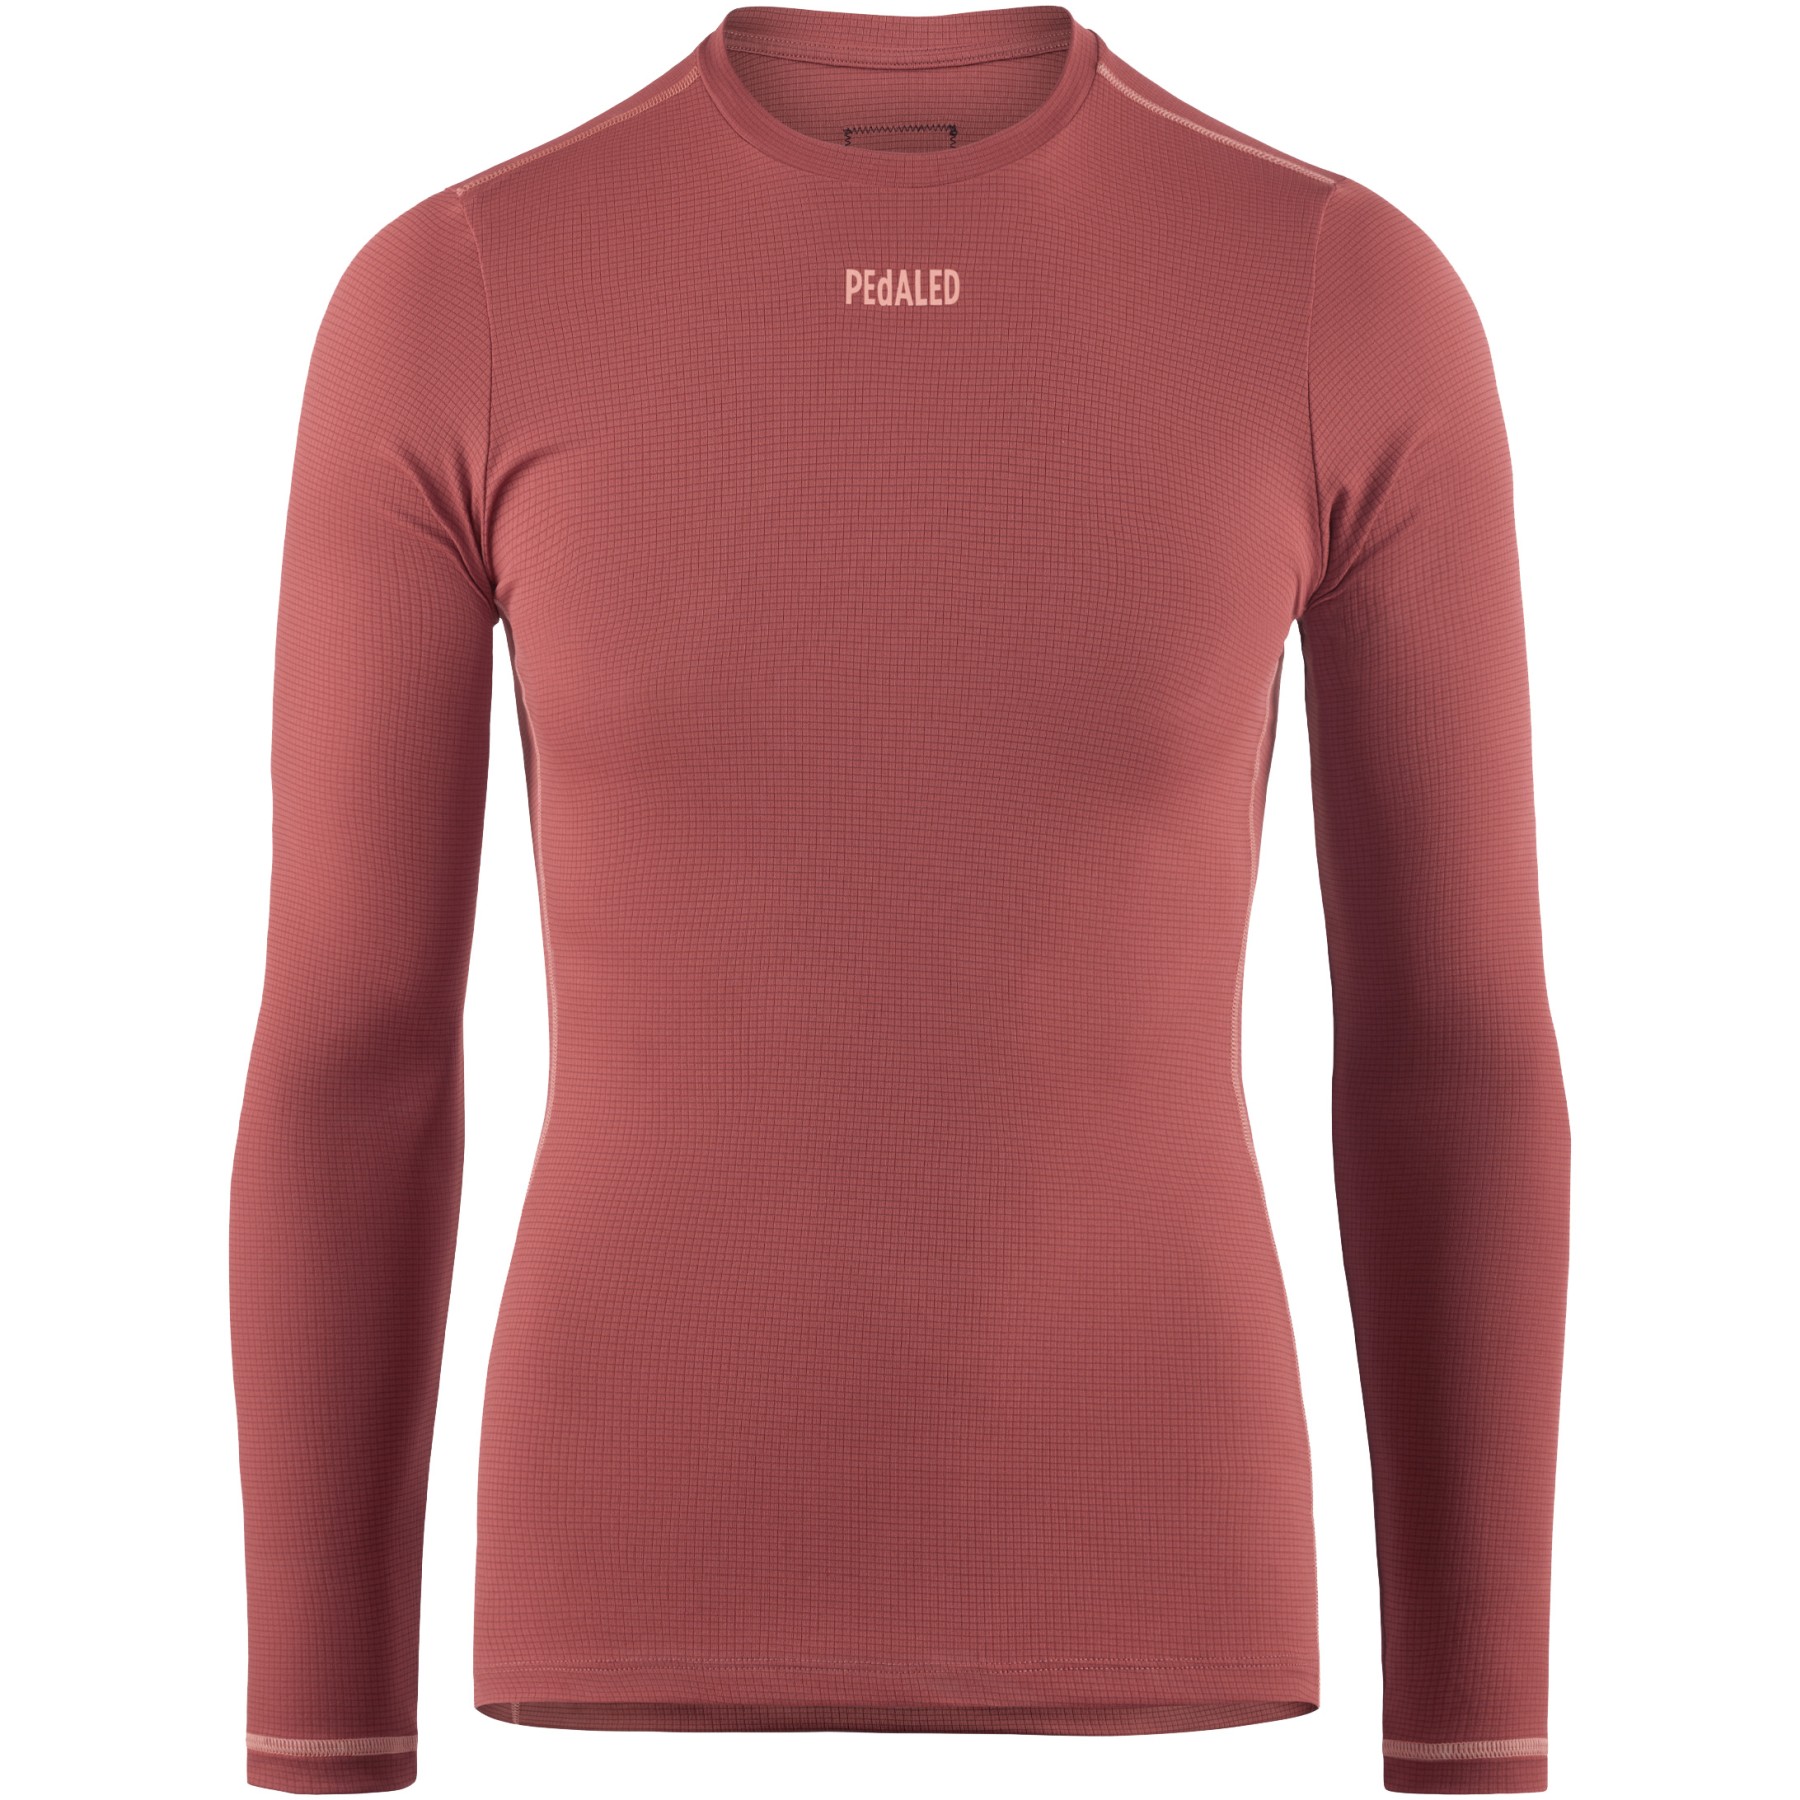 Produktbild von PEdALED Odyssey Langarm-Unterhemd Damen - Dark Red